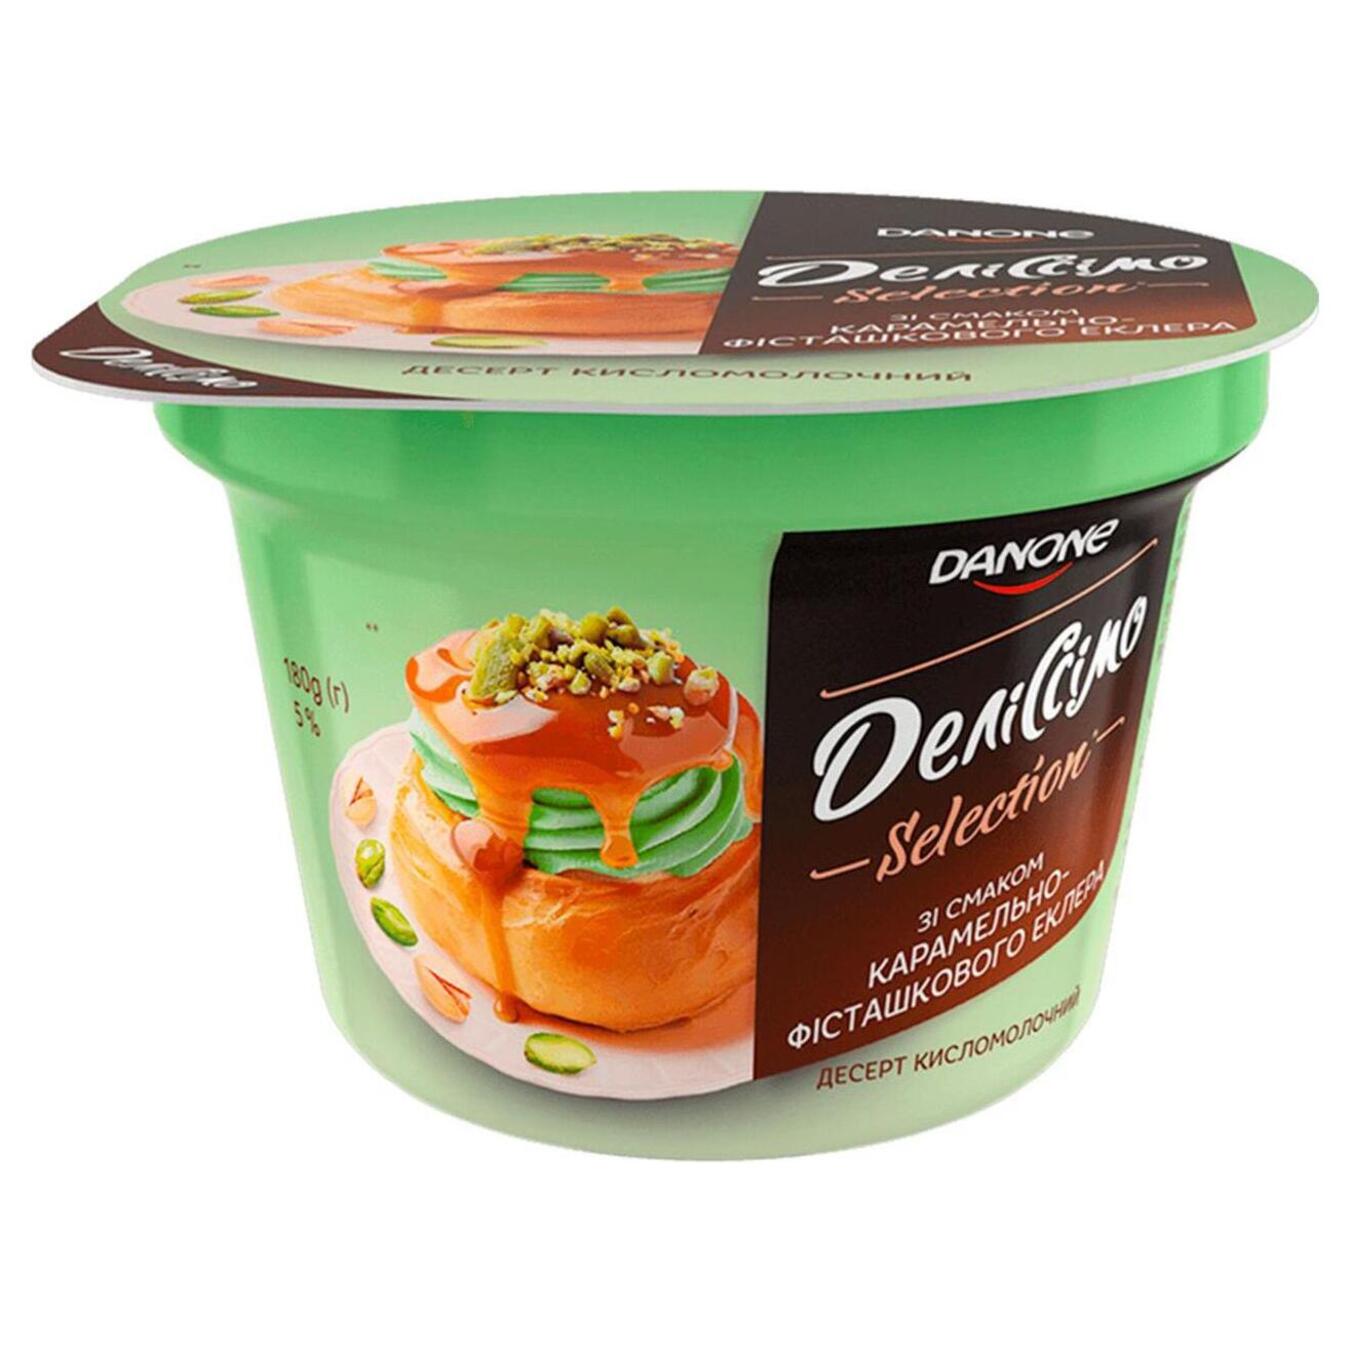 Danone Delissimo caramel-pistachio-flavored sour-milk dessert éclair glass 5% 180g